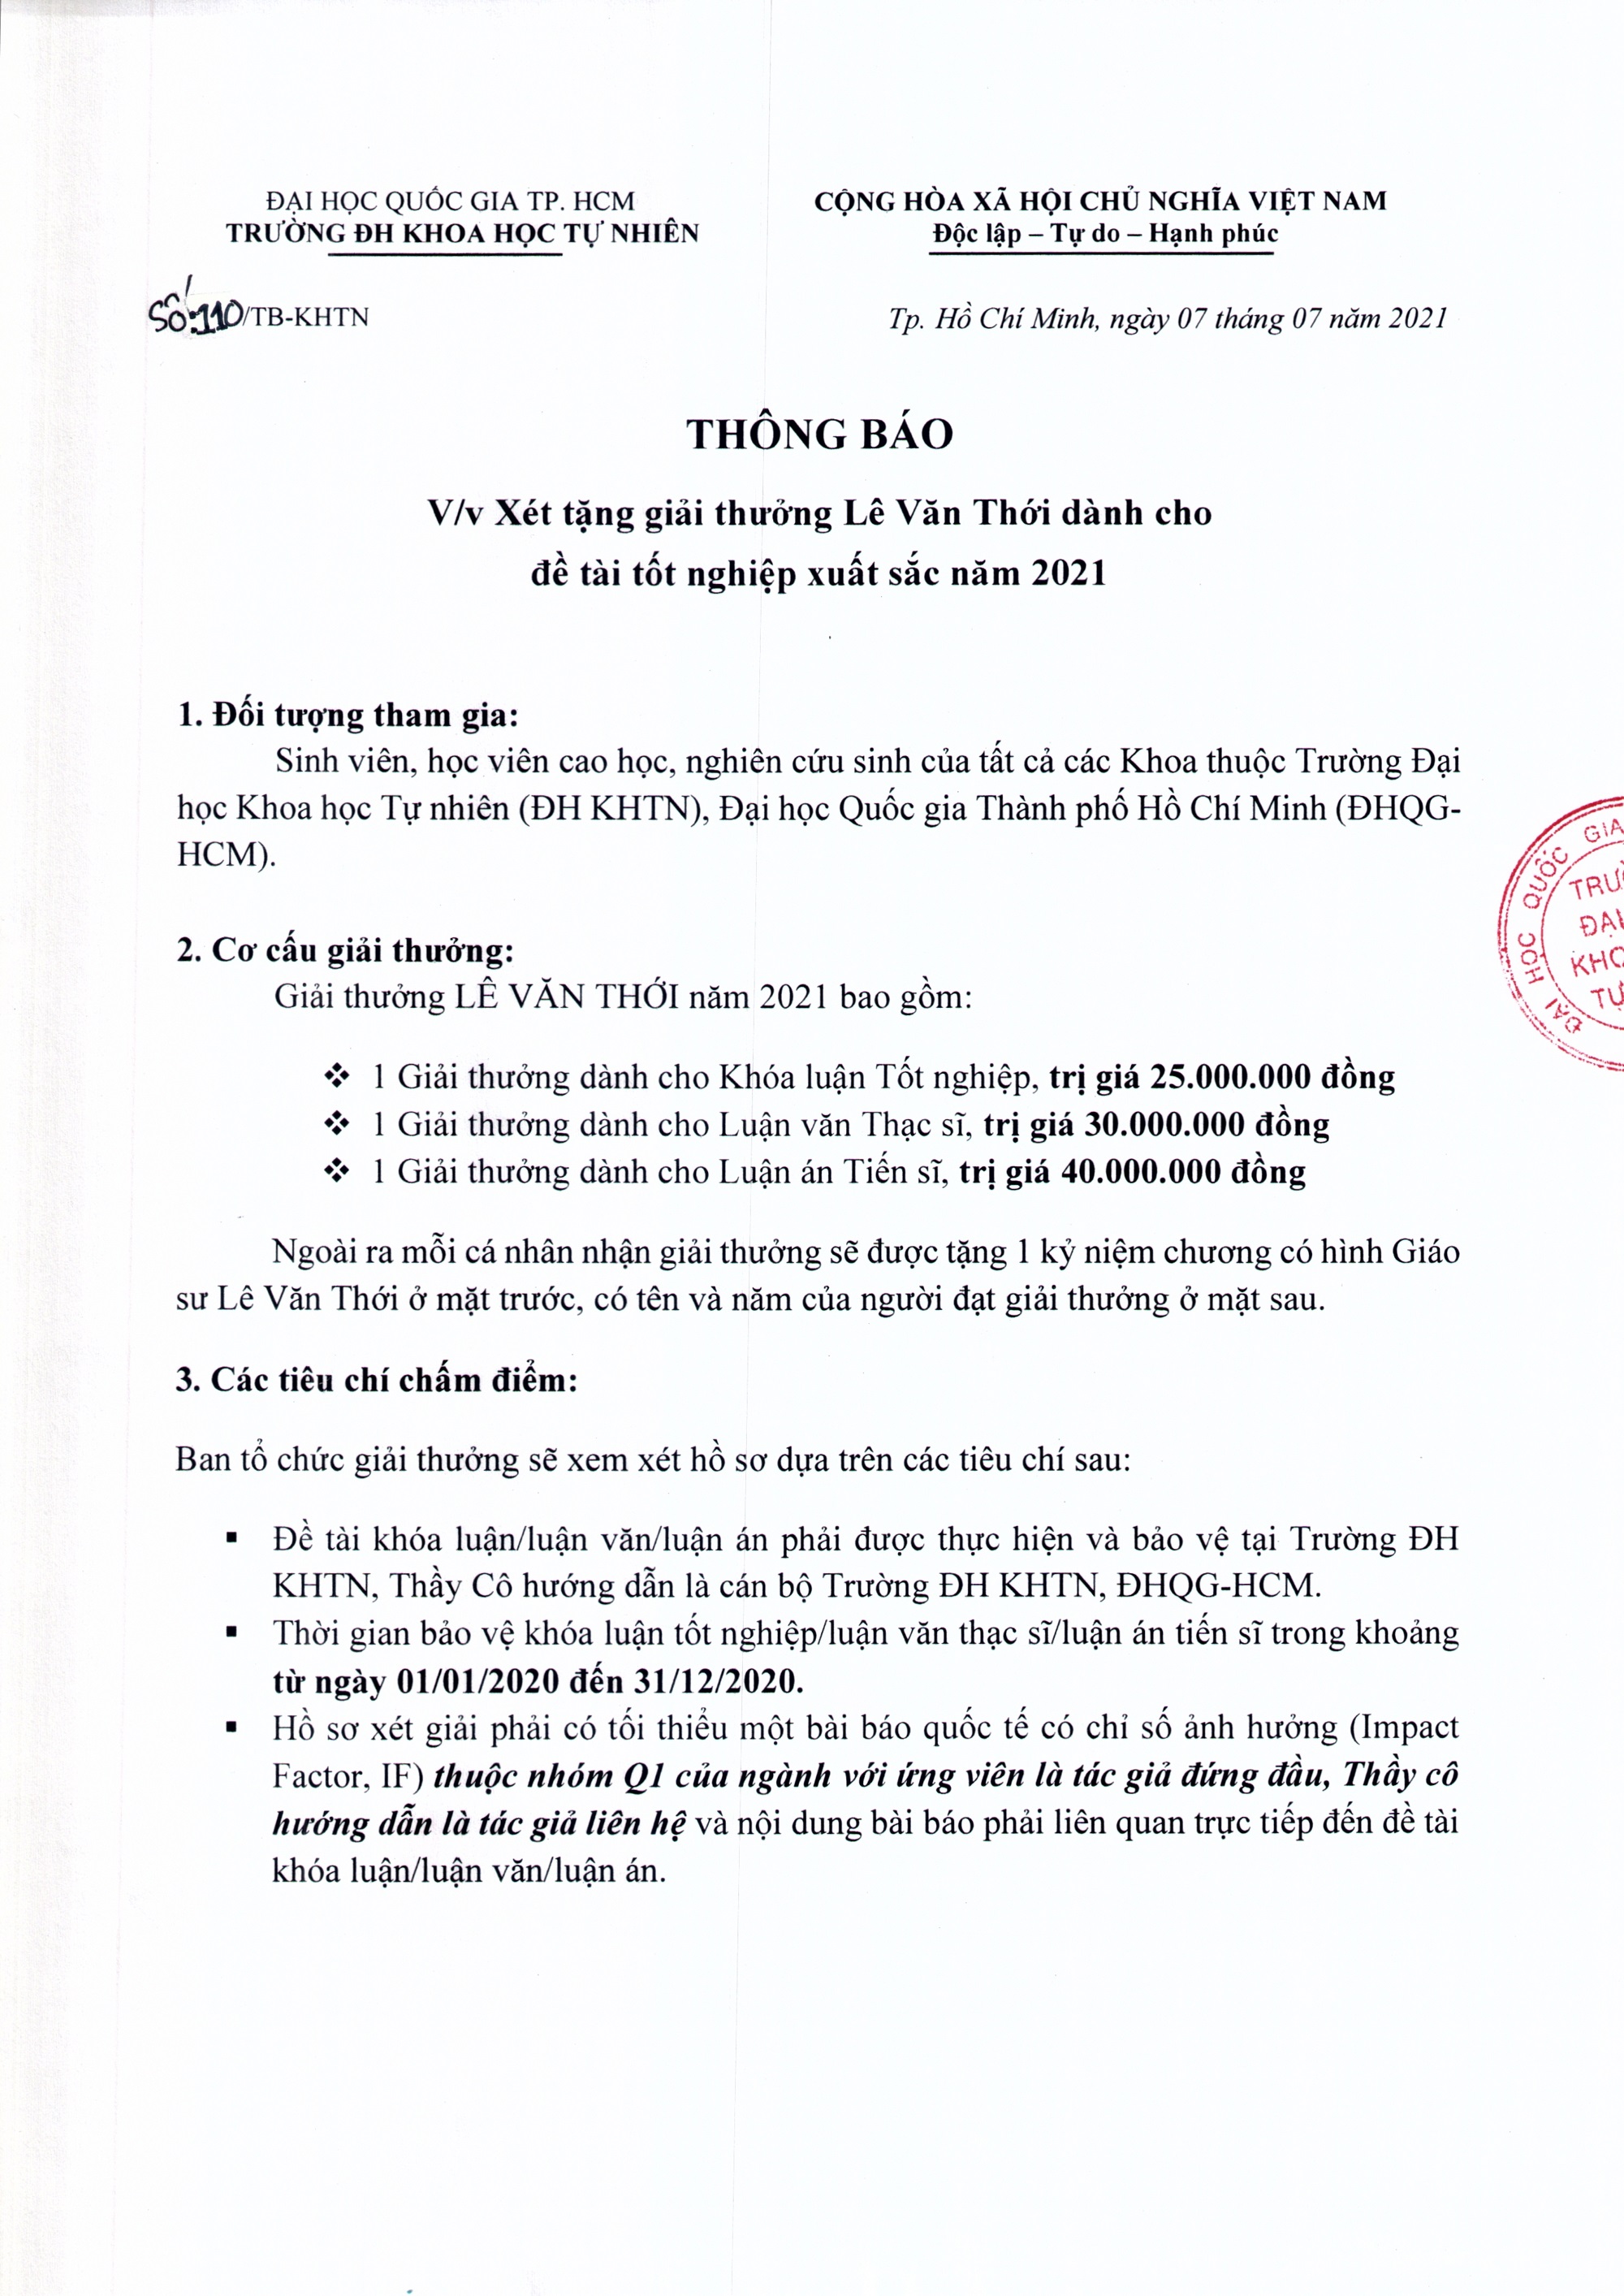 Thong_bao_Xet_tYng_giYi_thYYng_Le_VYn_ThYi_nYm_2021_Page1